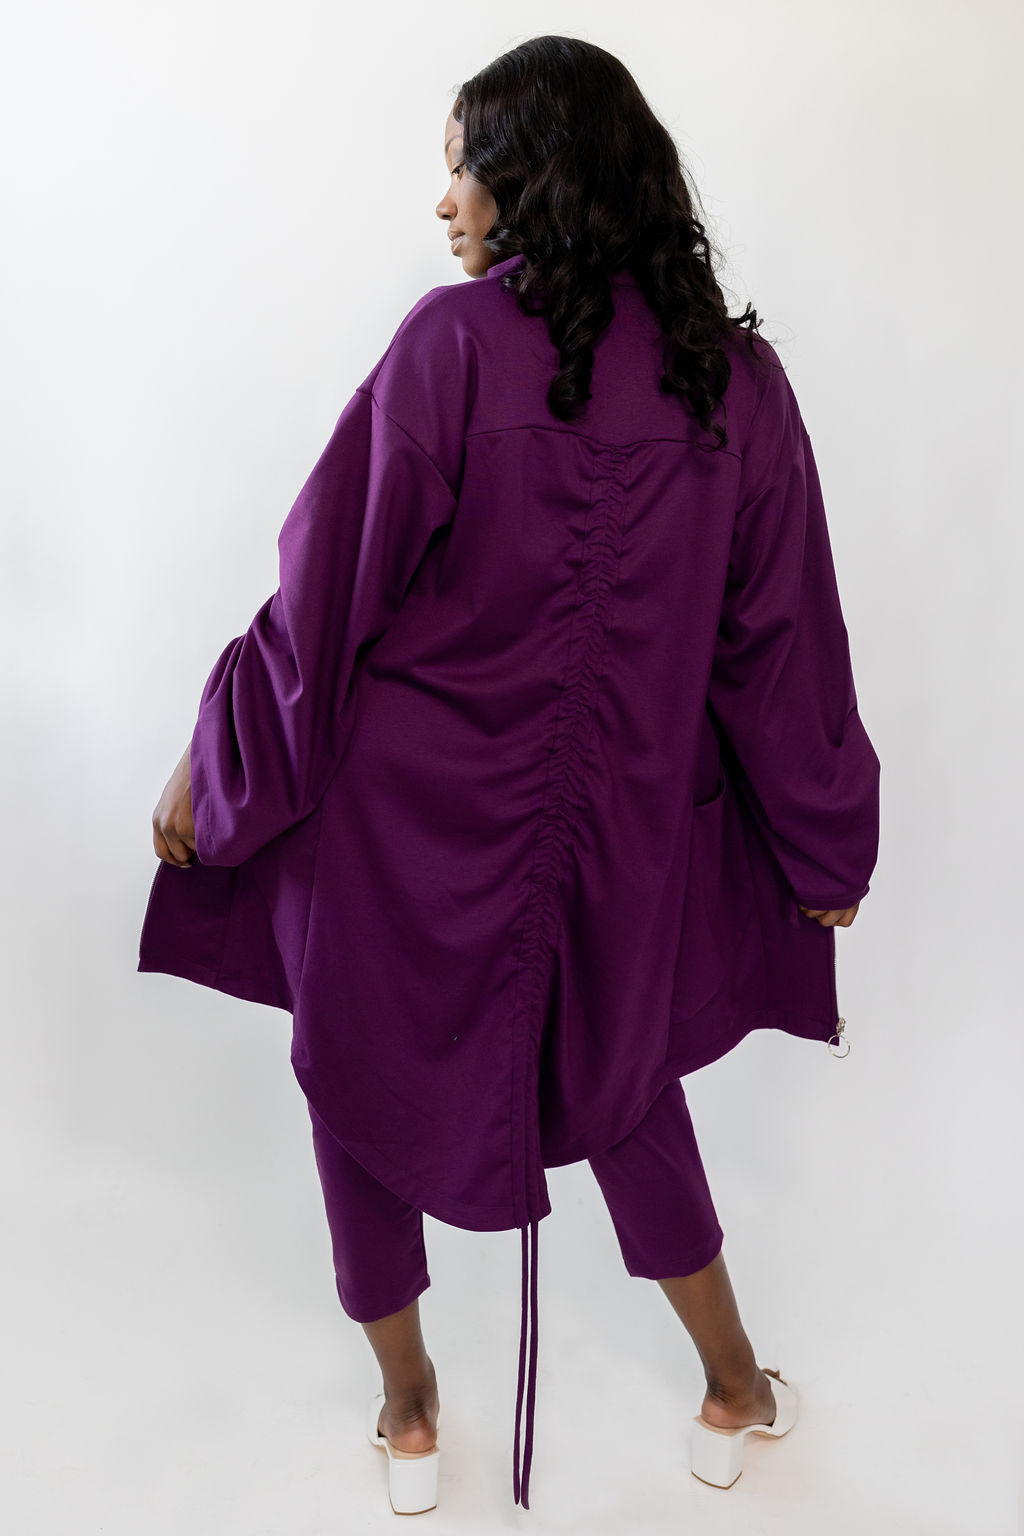 Purple Transition Jacket - Year Round Jacket